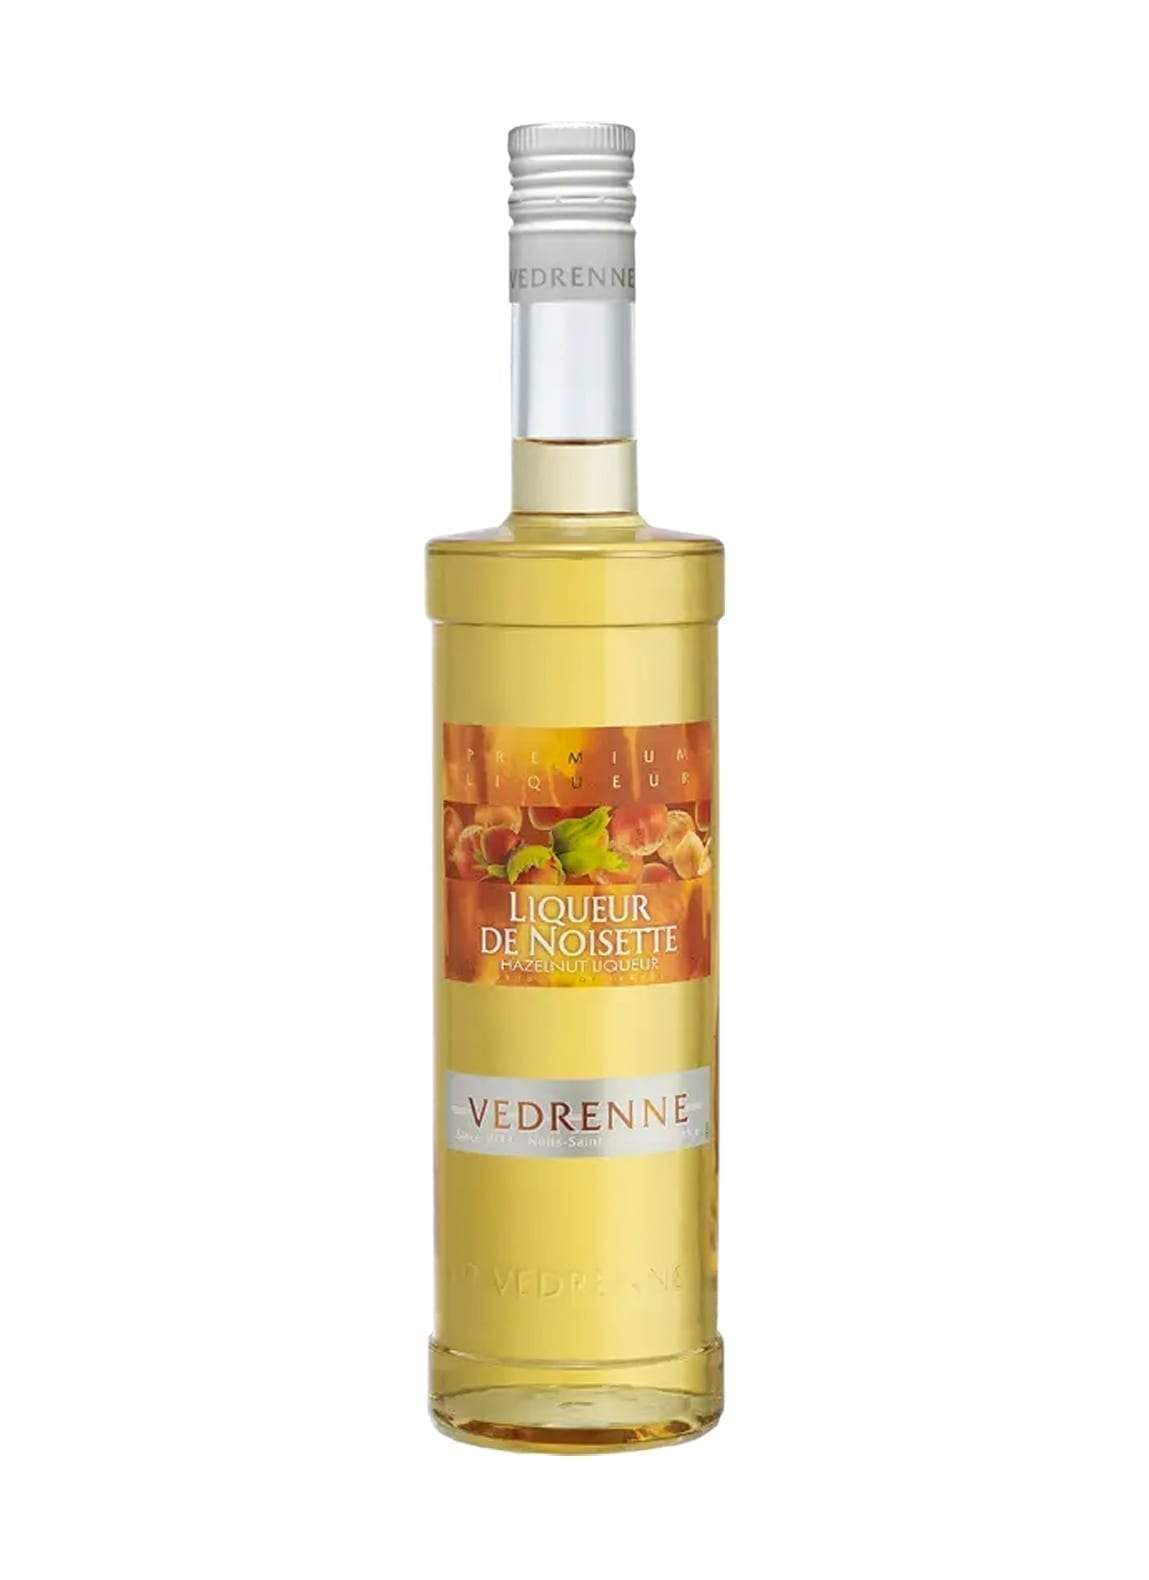 Vedrenne Liqueur de Noisette (Hazelnut) 25% 700ml | Liqueurs | Shop online at Spirits of France